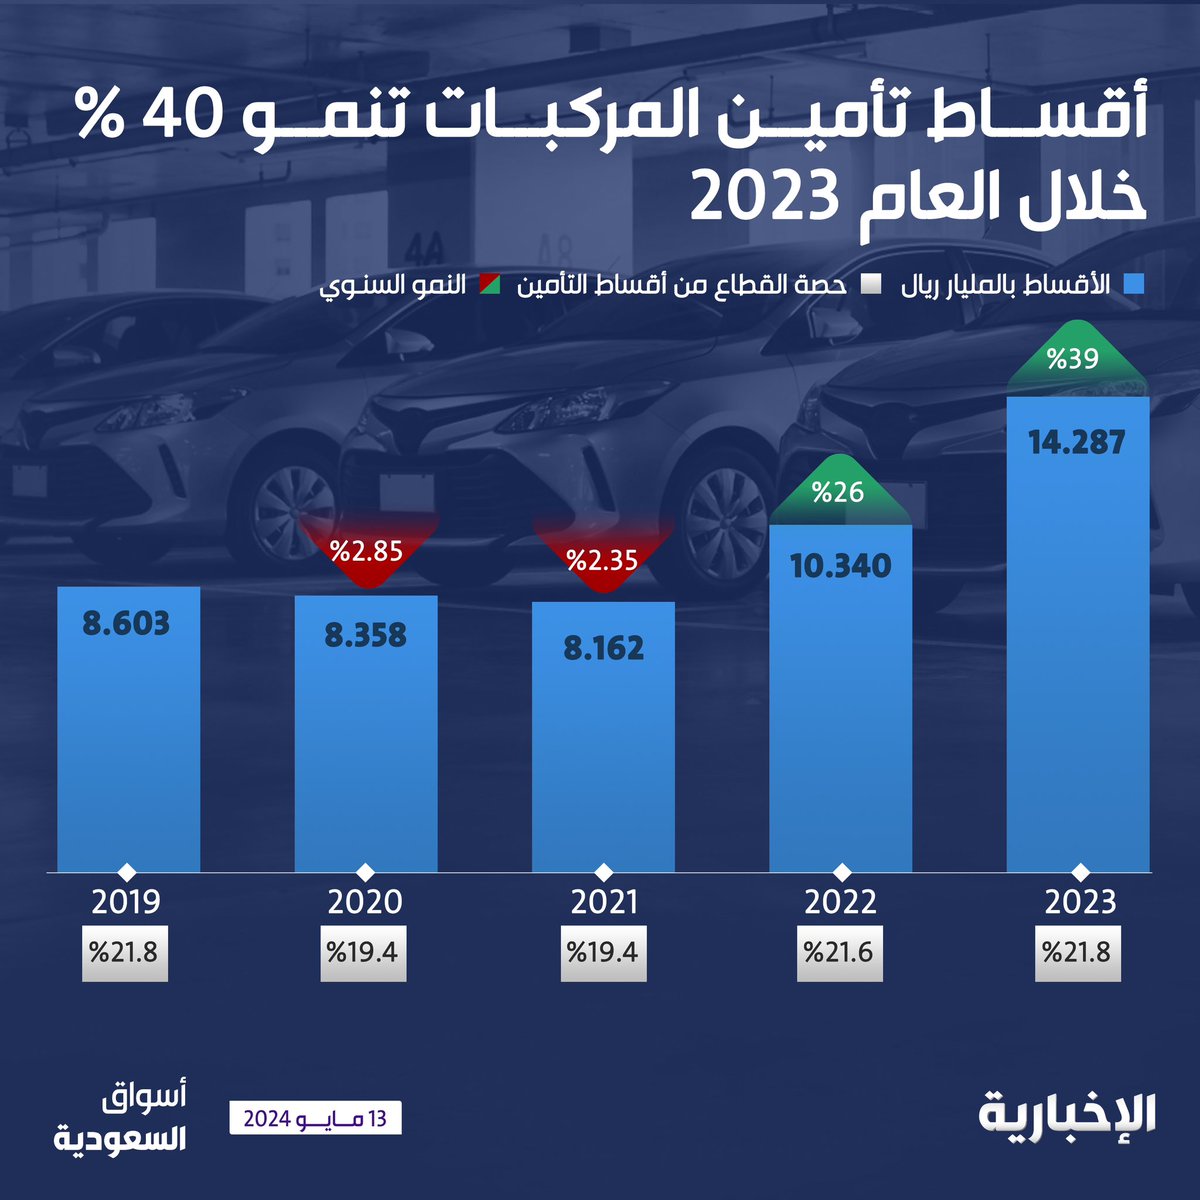 #بيانات_أسواق_السعودية | 14.287 مليار ريال قيمة أقساط تأمين المركبات خلال 2023 بنمو 40٪ على أساس سنوي #الإخبارية